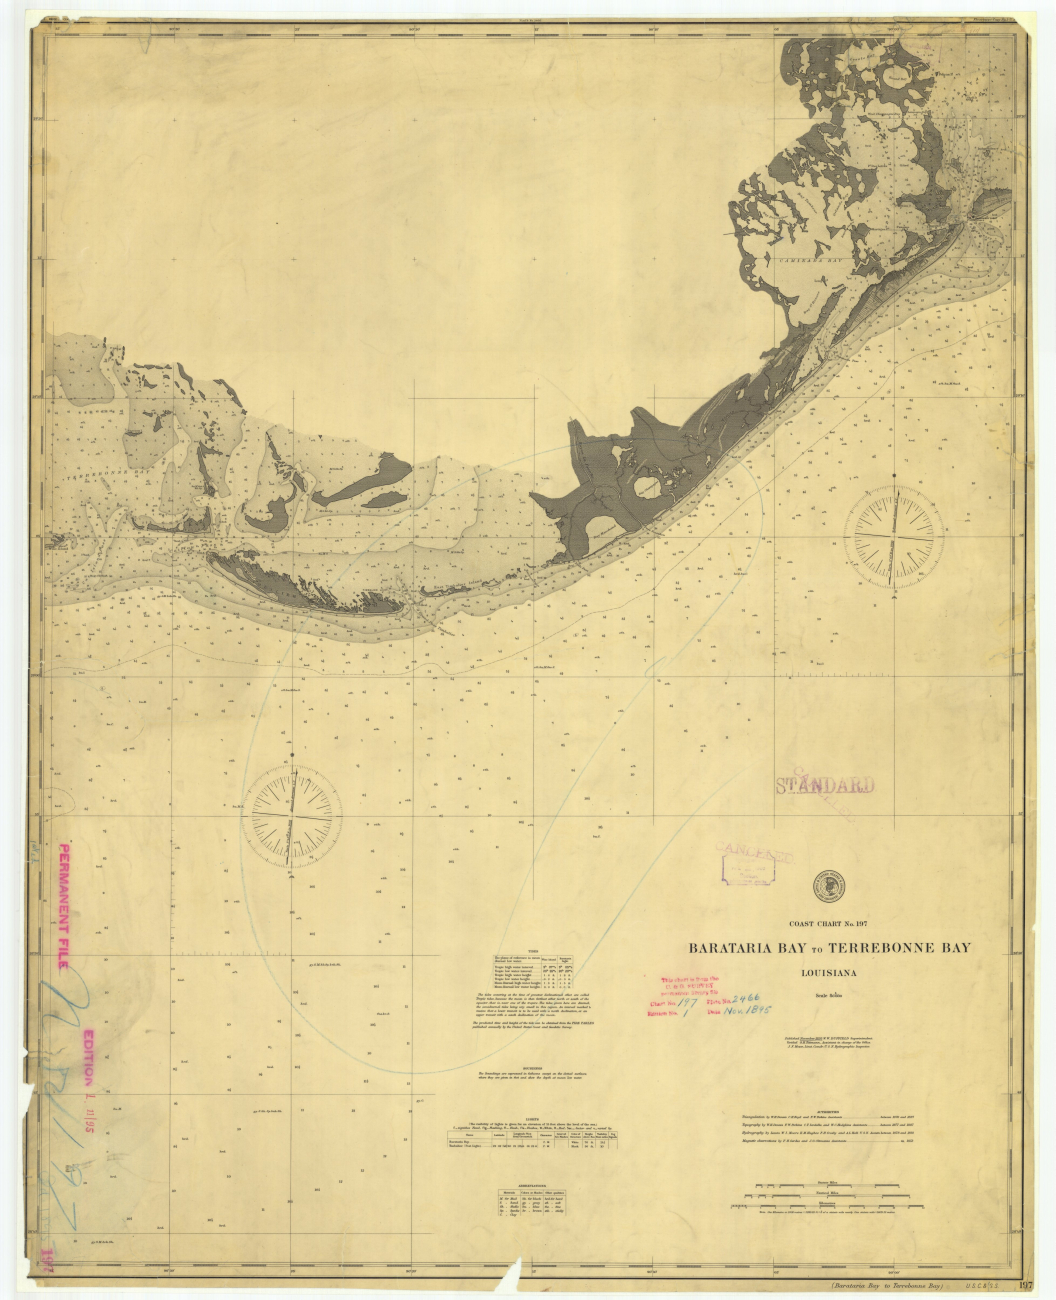 Barataria Bay to Terrebonne Bay, 1895